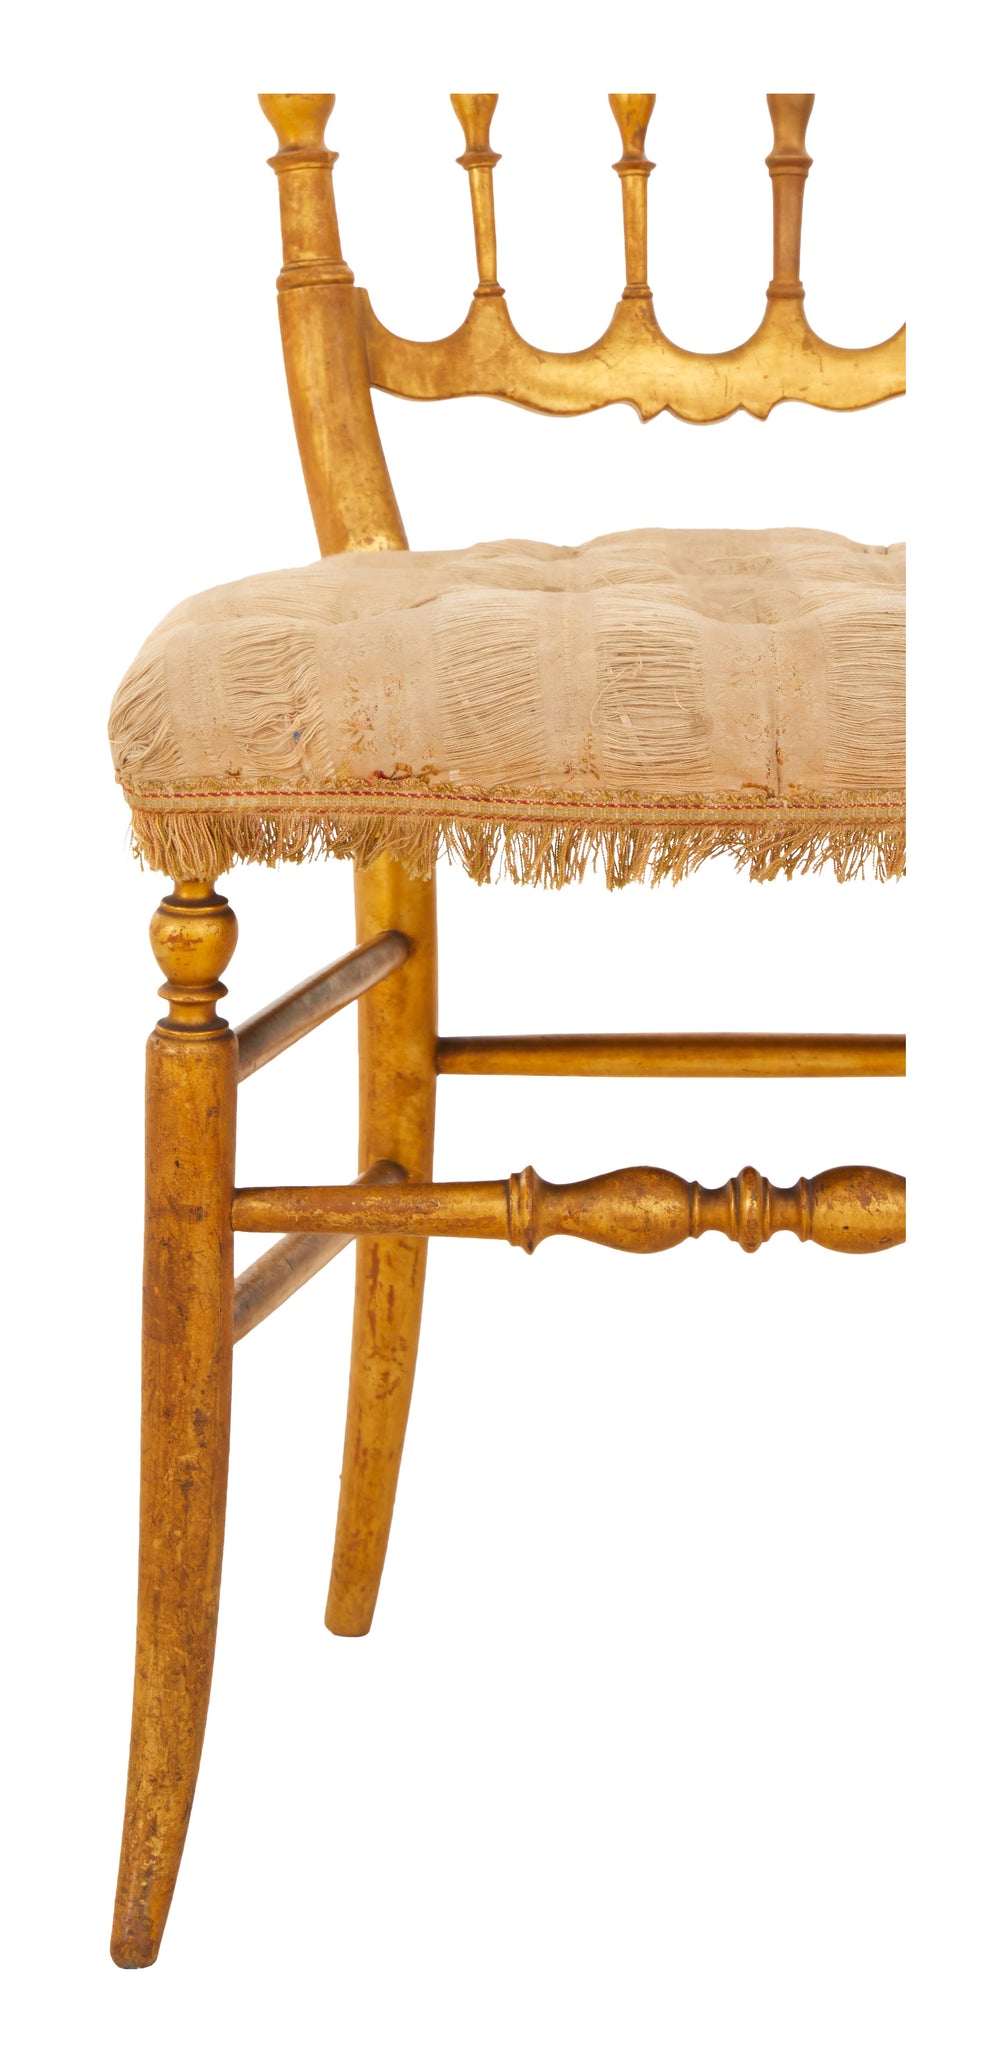 Antique Wood Chiavari Chair